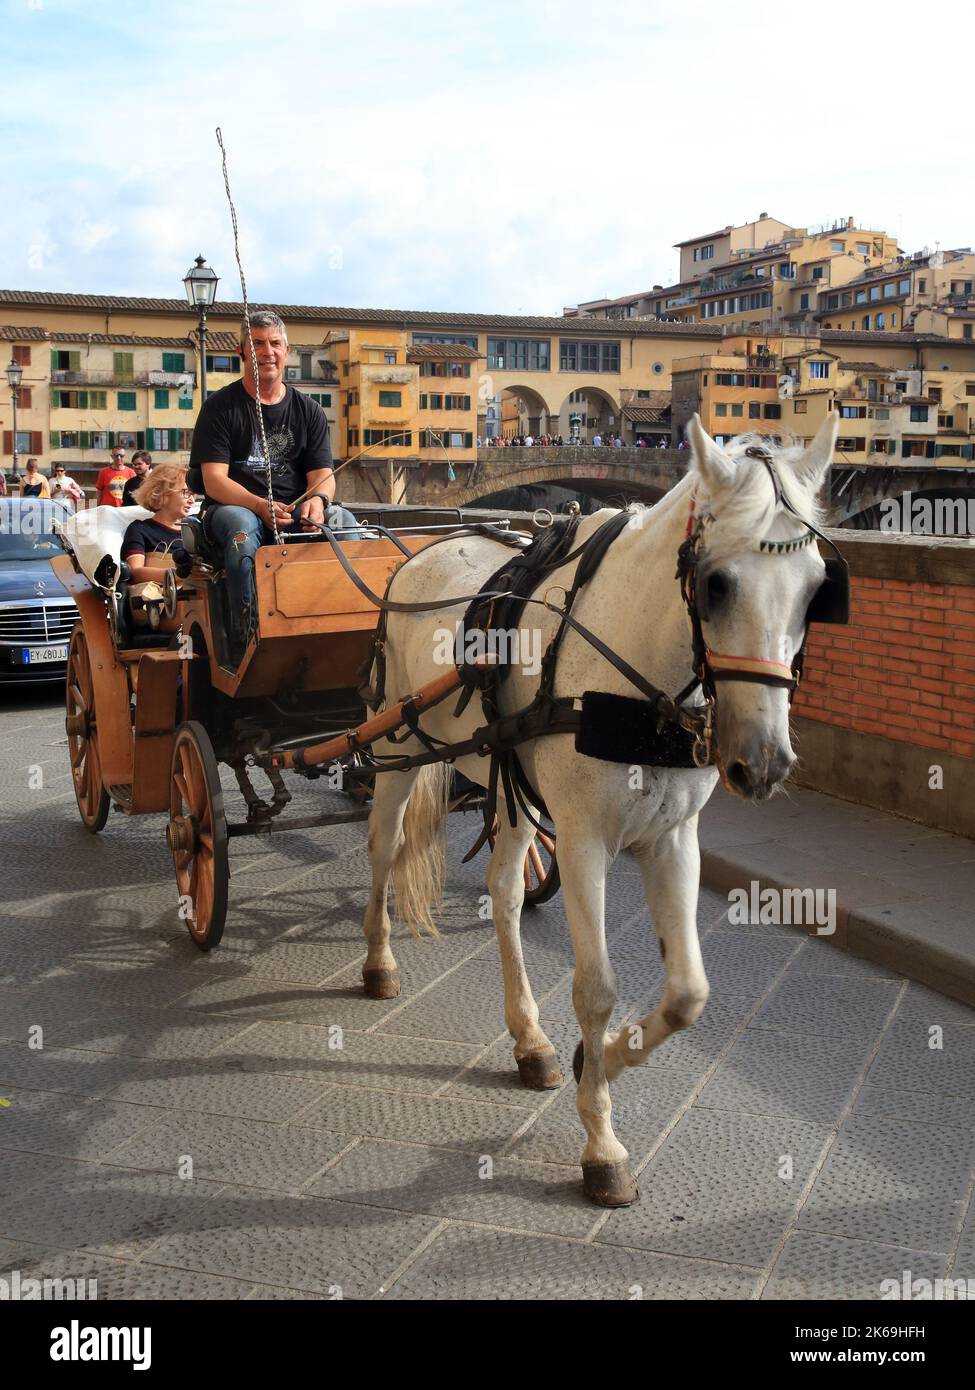 Carruaje de caballos en el puente Ponte Vecchio, Florencia Foto de stock